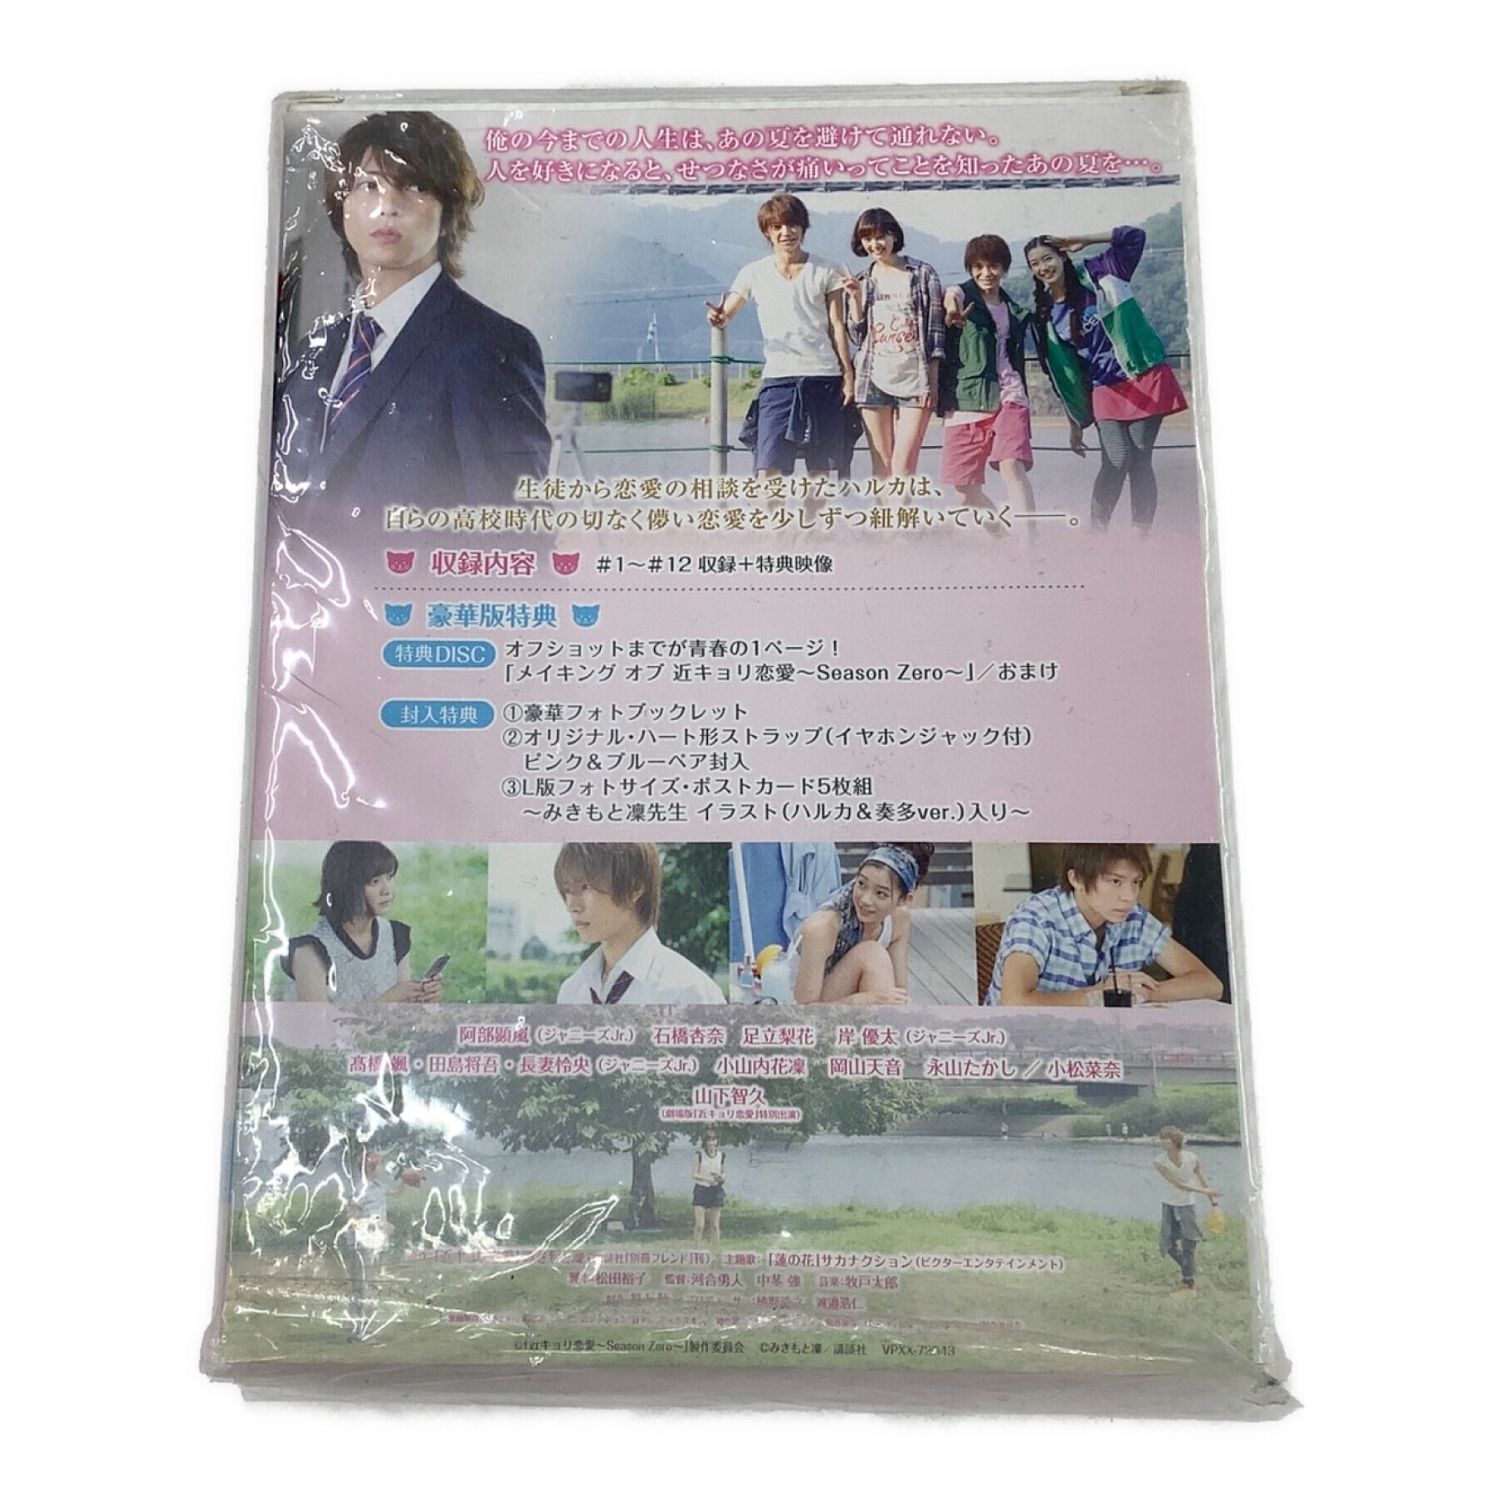 近キョリ恋愛 〜Season Zero〜 DVD-BOX豪華版 初回限定 - DVD/ブルーレイ